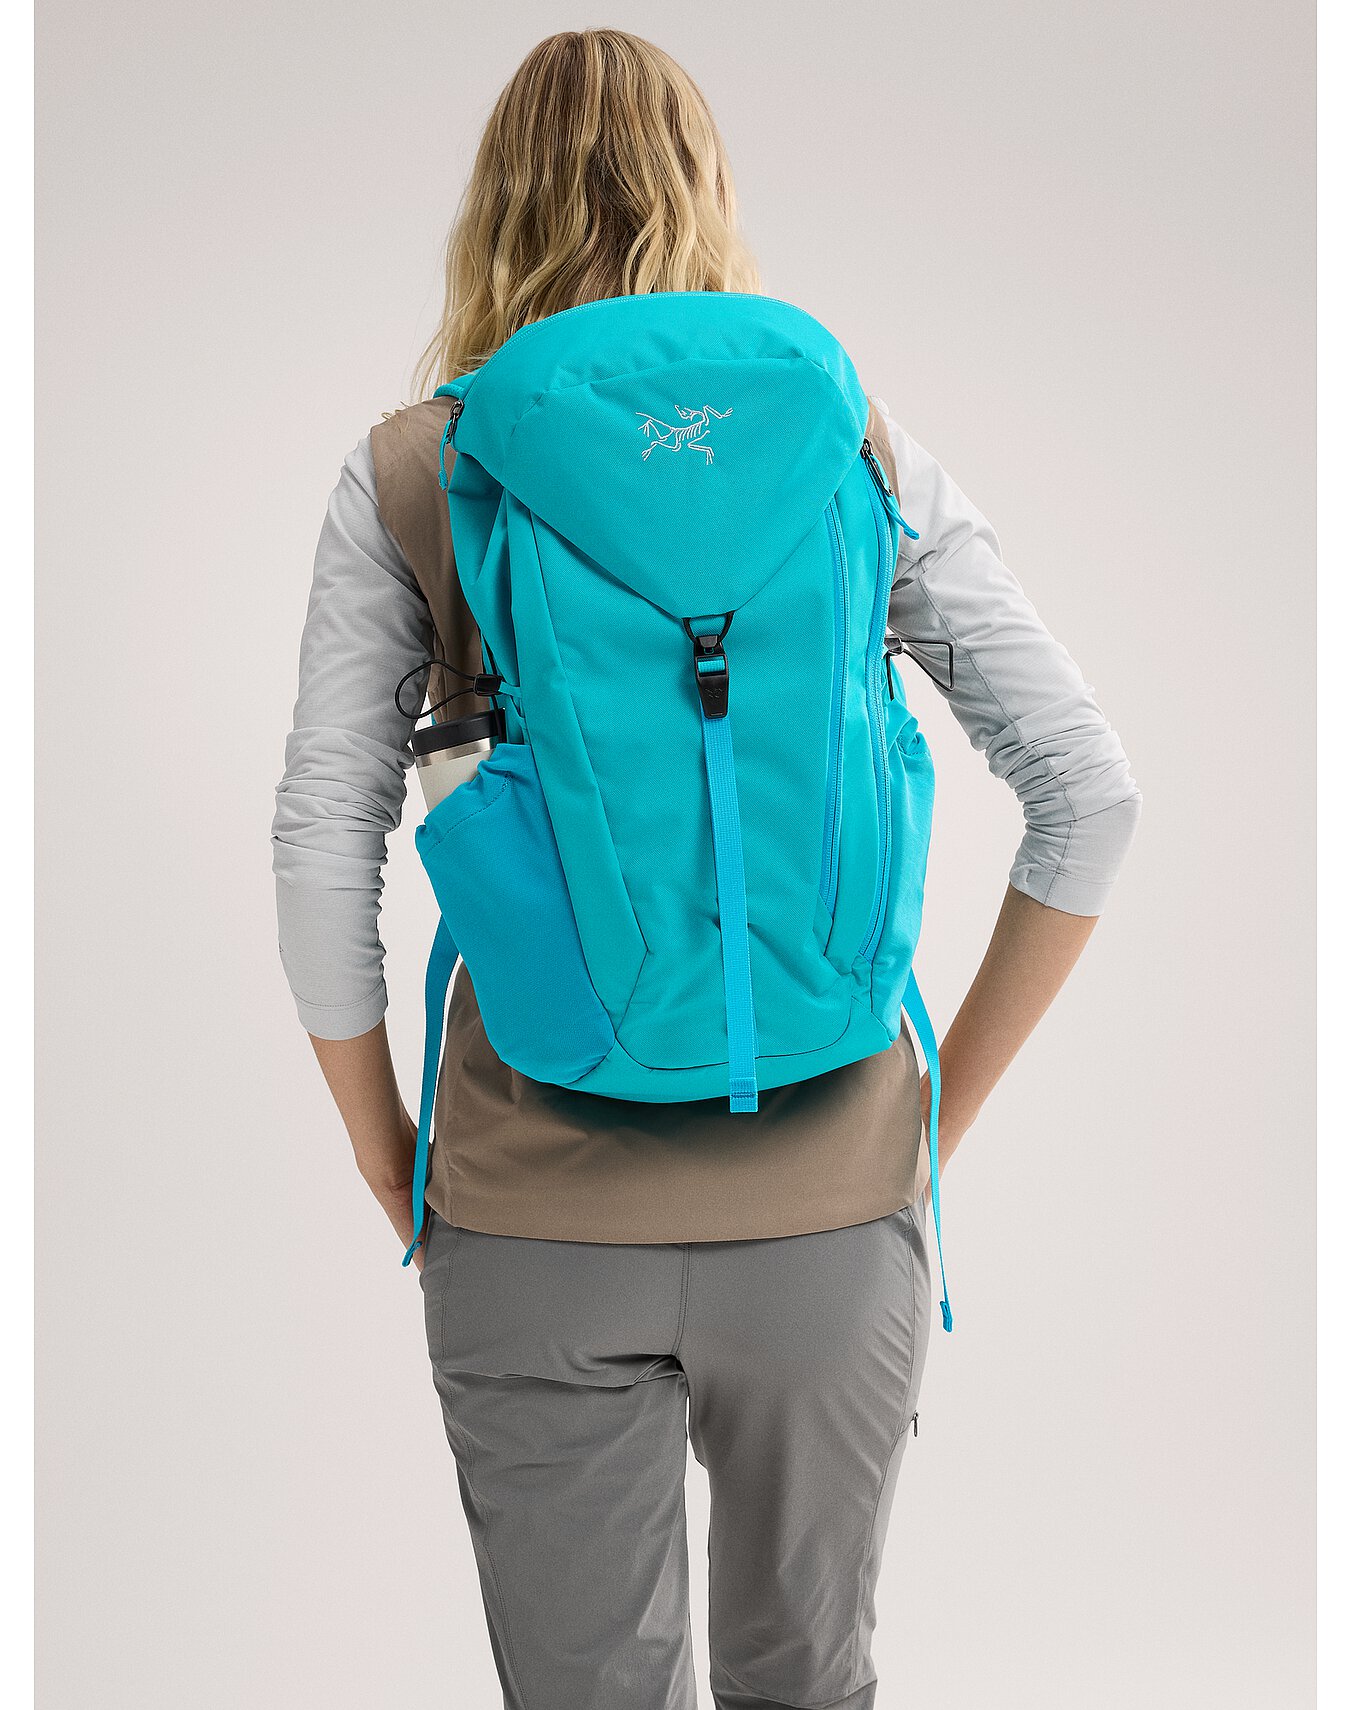 Mantis 20 Backpack | Arc'teryx Outlet